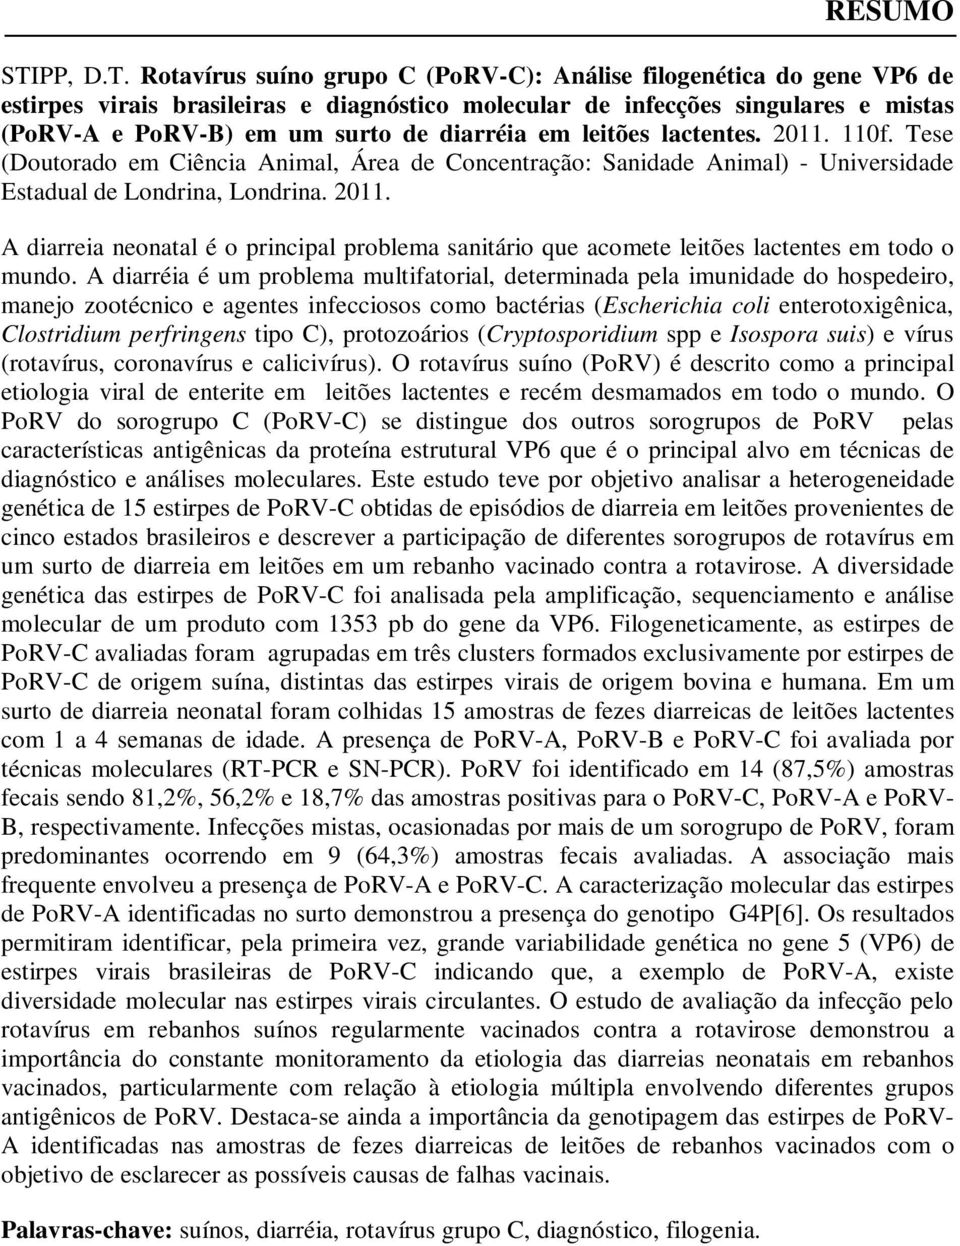 Rotavírus suíno grupo C (PoRV-C): Análise filogenética do gene VP6 de estirpes virais brasileiras e diagnóstico molecular de infecções singulares e mistas (PoRV-A e PoRV-B) em um surto de diarréia em